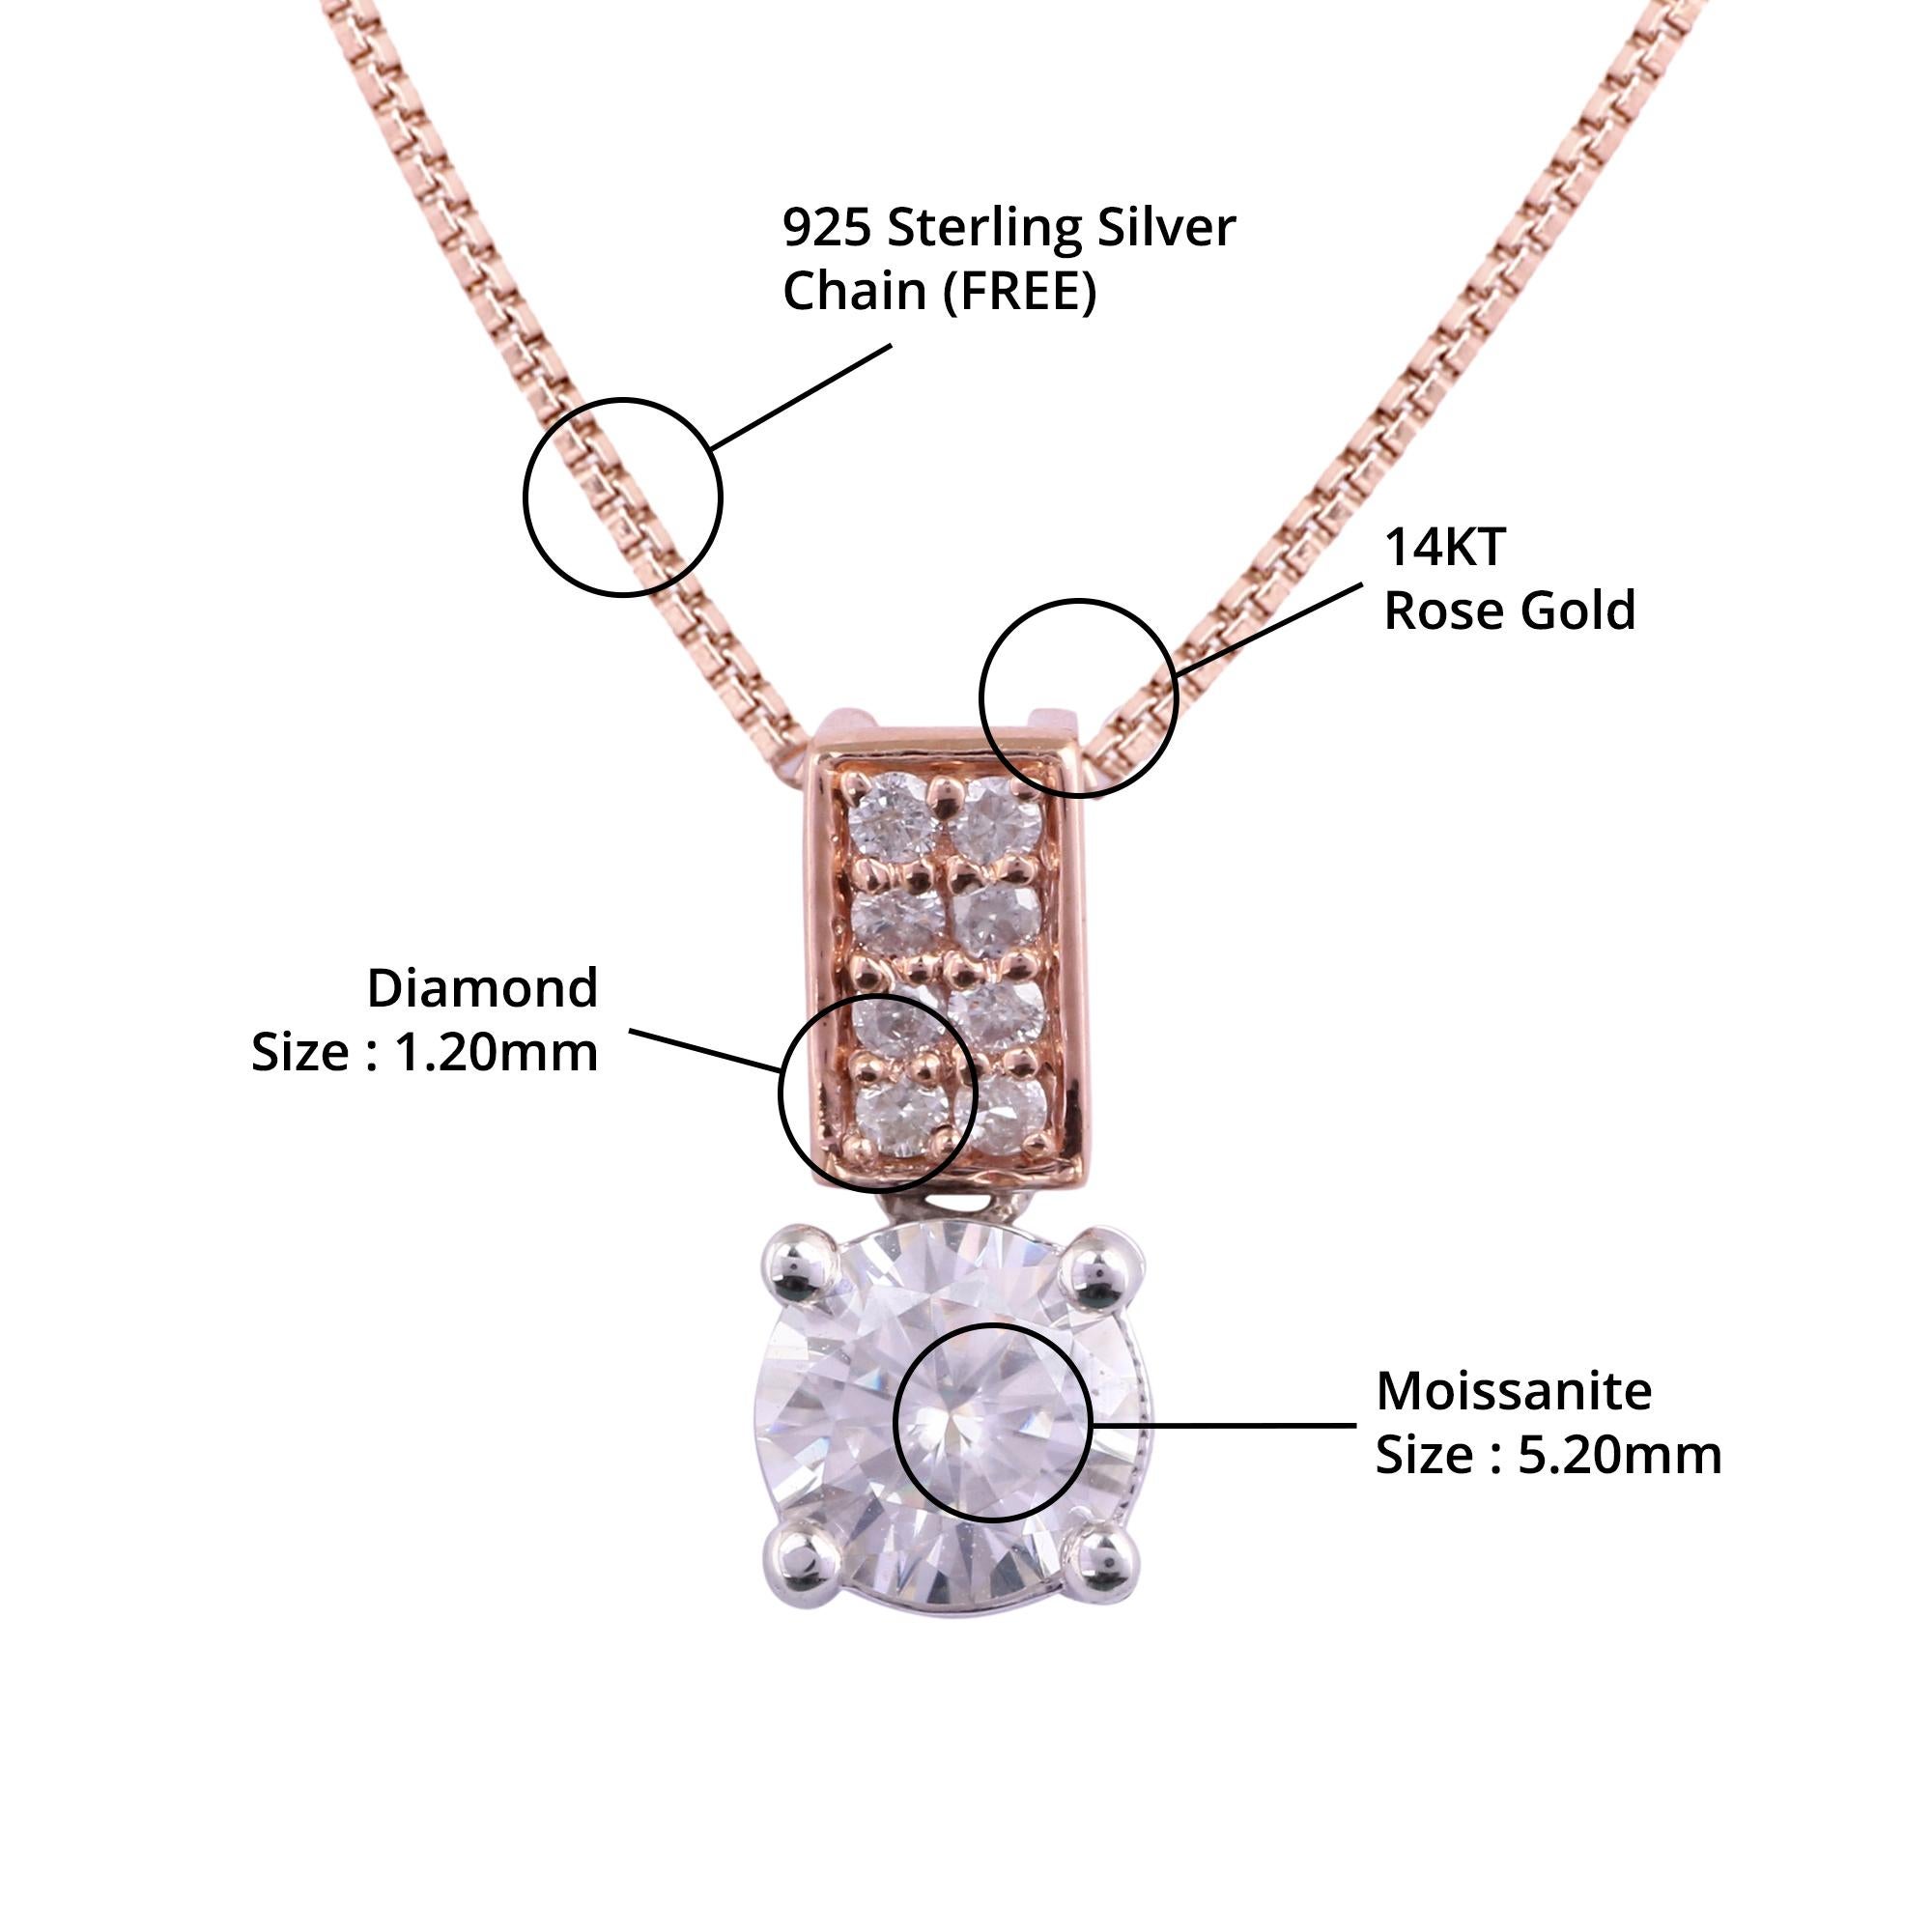 Einzelheiten zum Artikel:-

✦ SKU:- JPD00170RRW

✦ Material :- Gold

✦ Metallreinheit : 14K Rose Gold & Weißgold

✦ Edelstein-Spezifikation:- 
✧ Klarer Diamant rund (l1/H1) - 1,20 mm - 8 Stück
✧ Klarer Moissanit rund (VVS/DE) - 5,20 mm - 1 Stk


✦